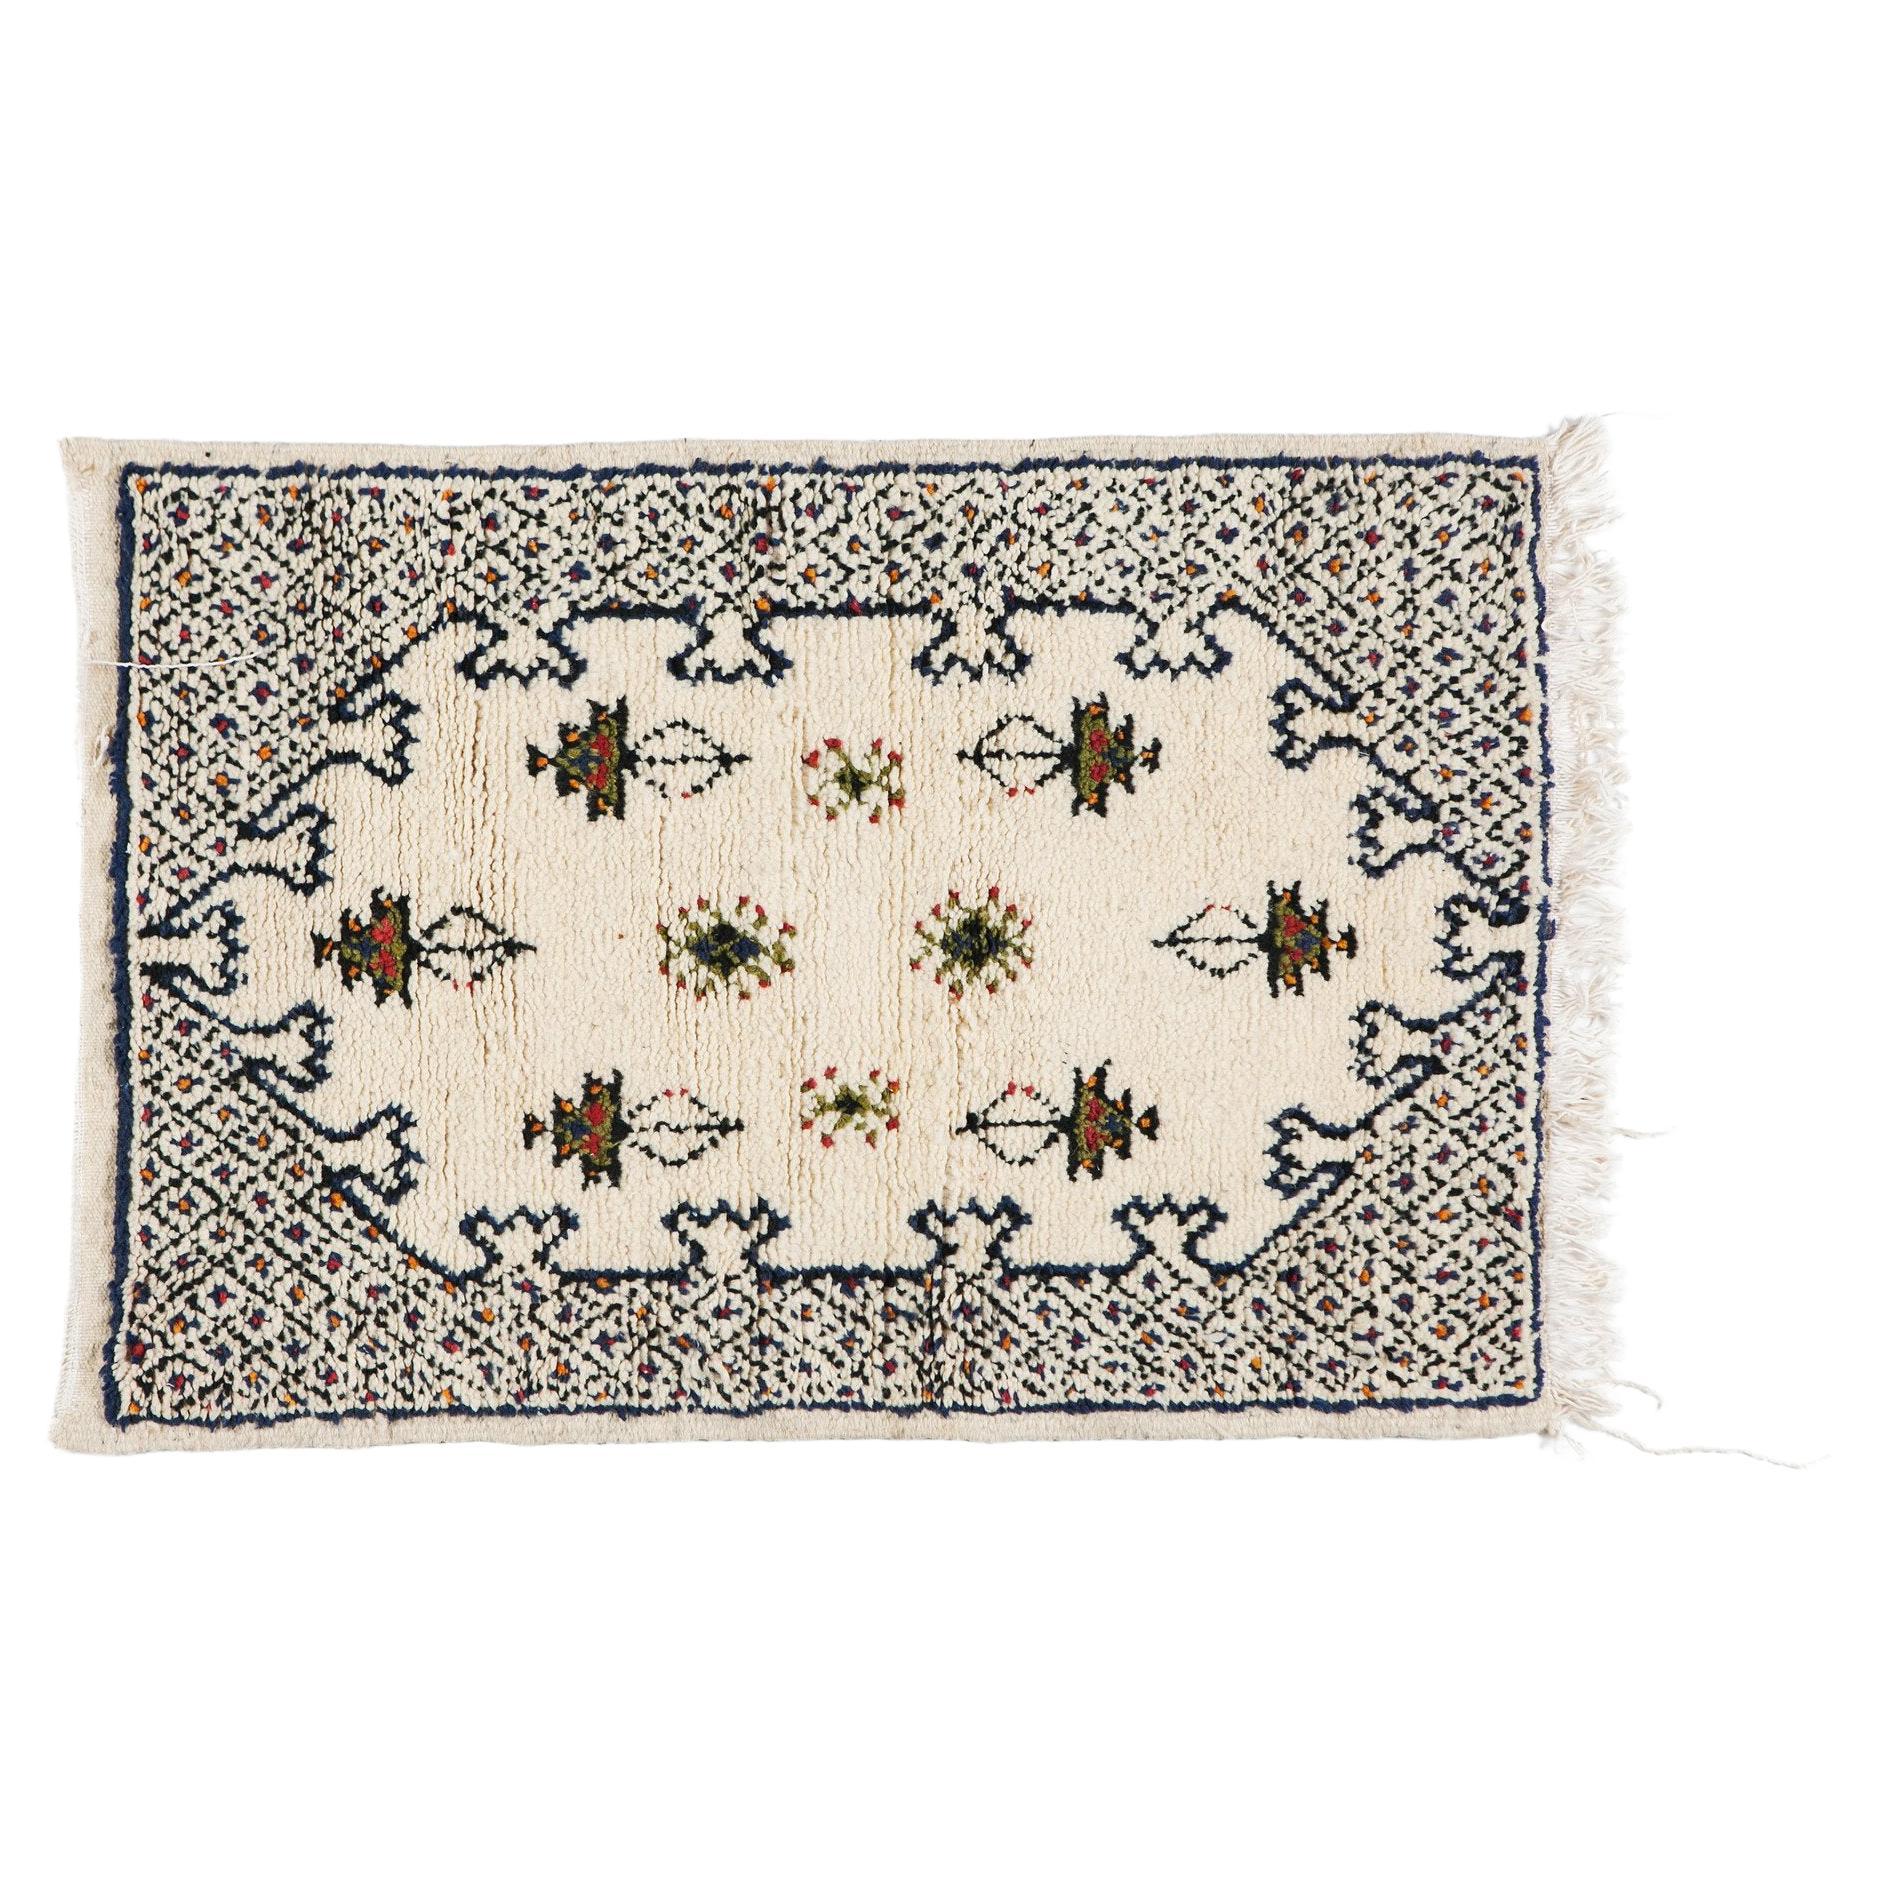 Petit tapis ou moquette marocain vintage en laine blanche tissé à la main, style bohème chic et tribal 